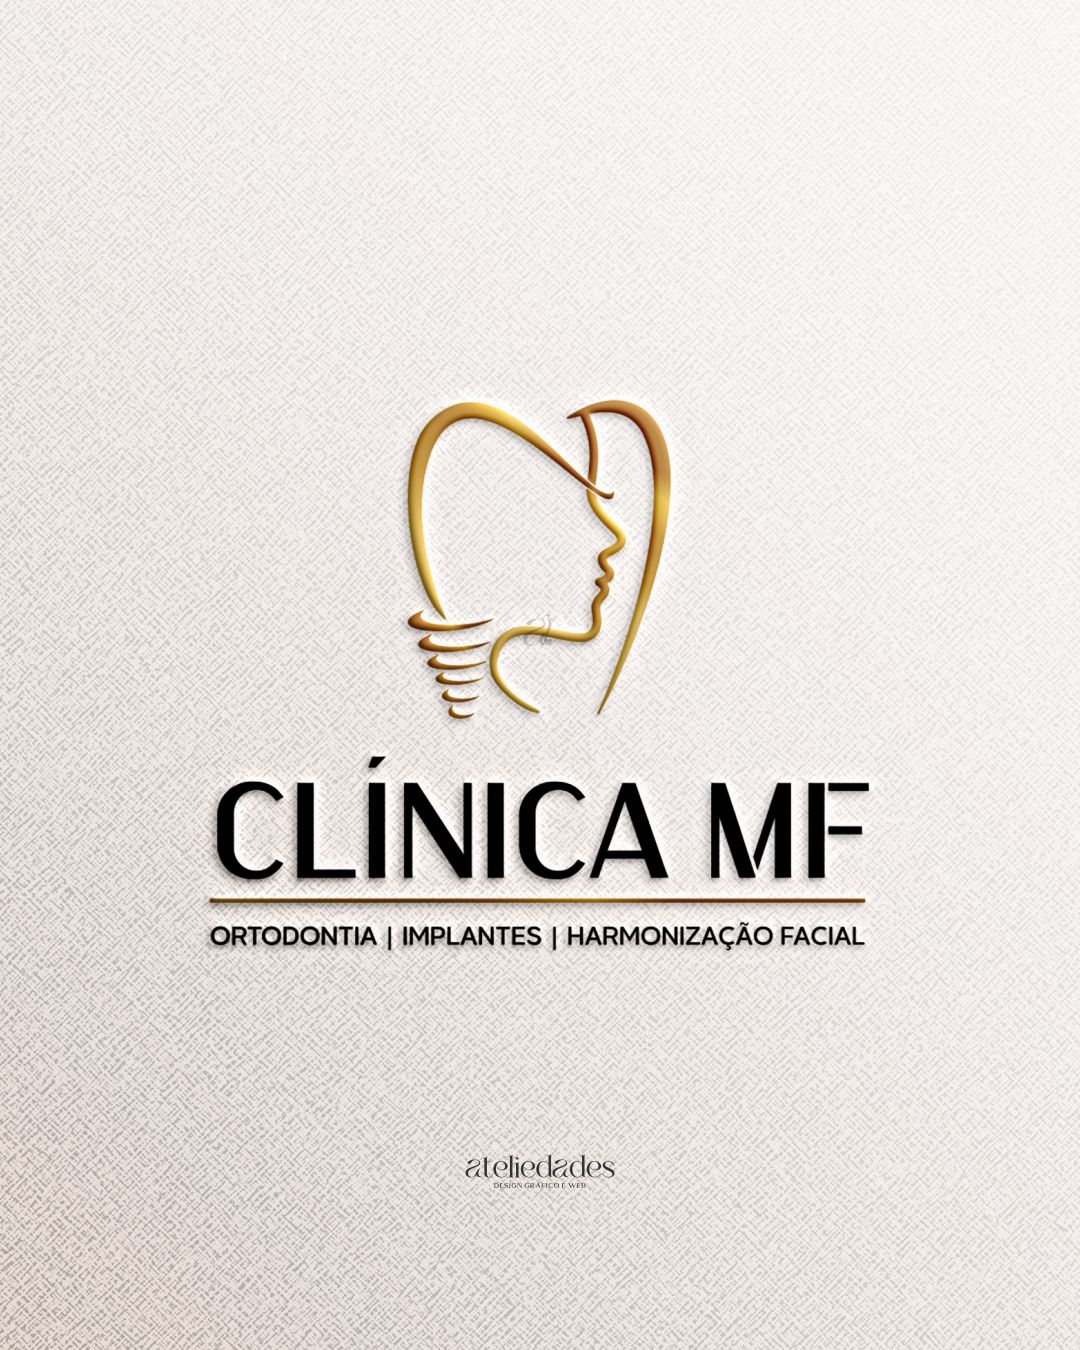 ateliedades logotipo harmonização facial ortodontia implantes clínica mf